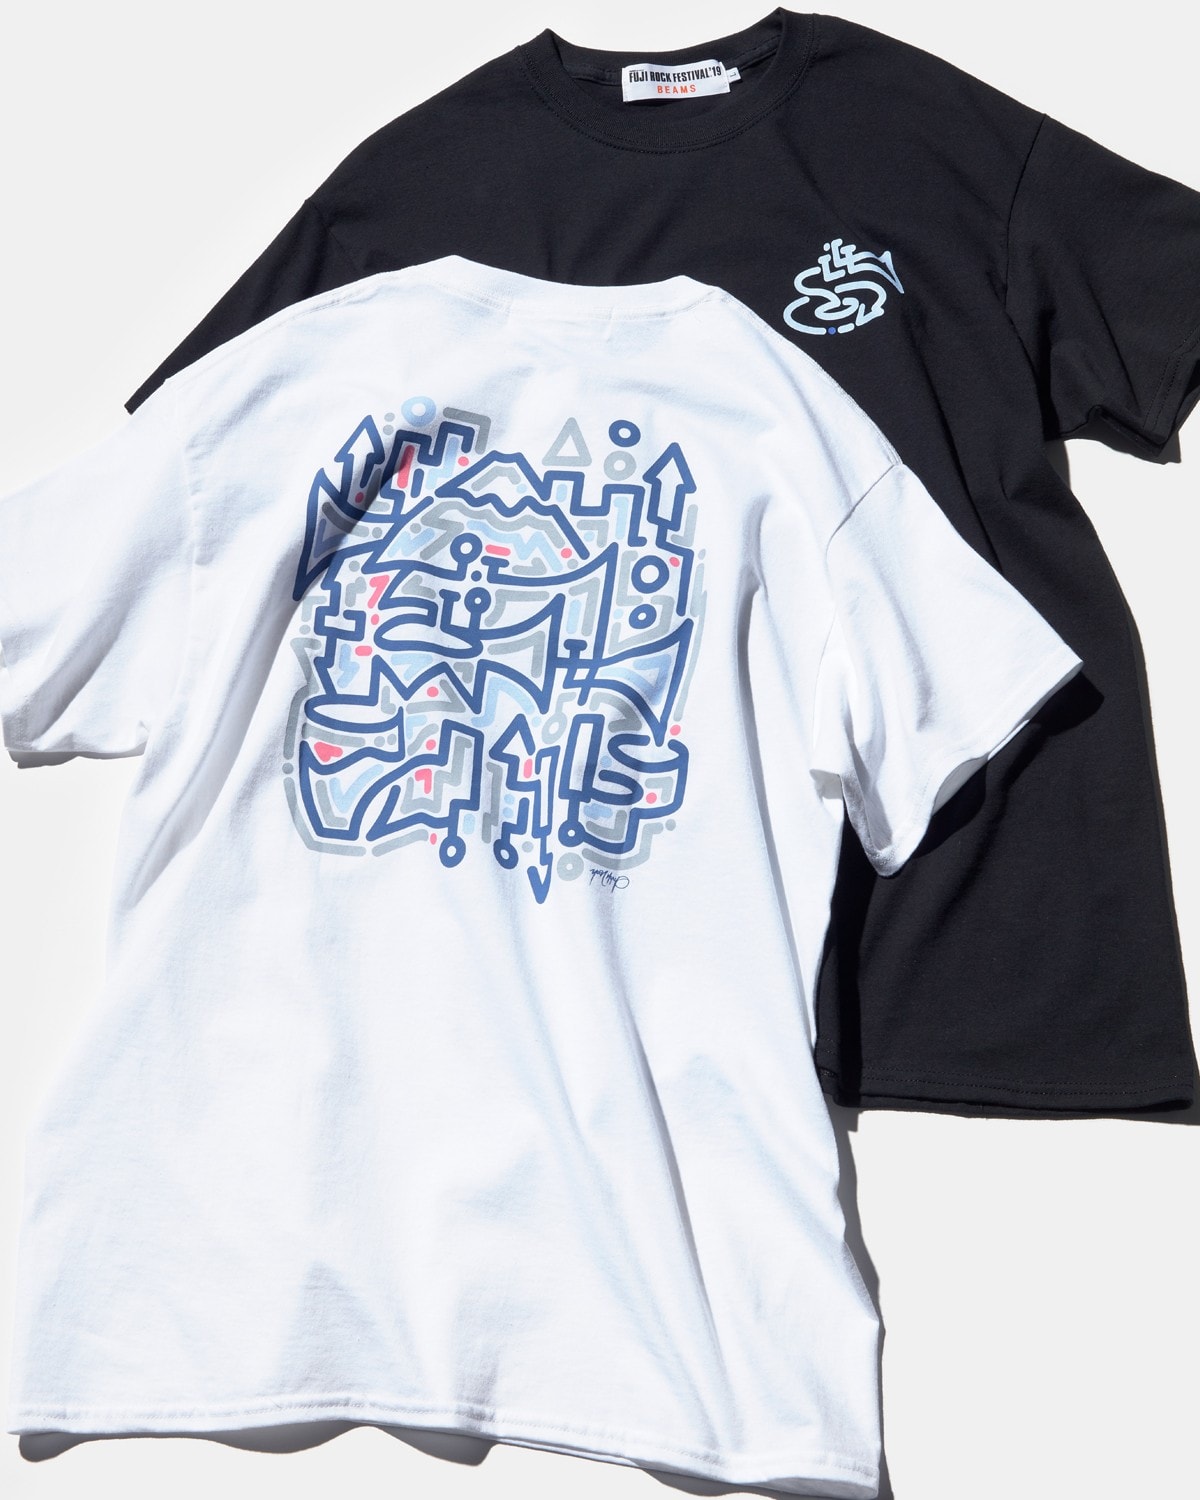 BEAMS x Fuji Rock 2019 聯乘限定 T-Shirt 系列登場